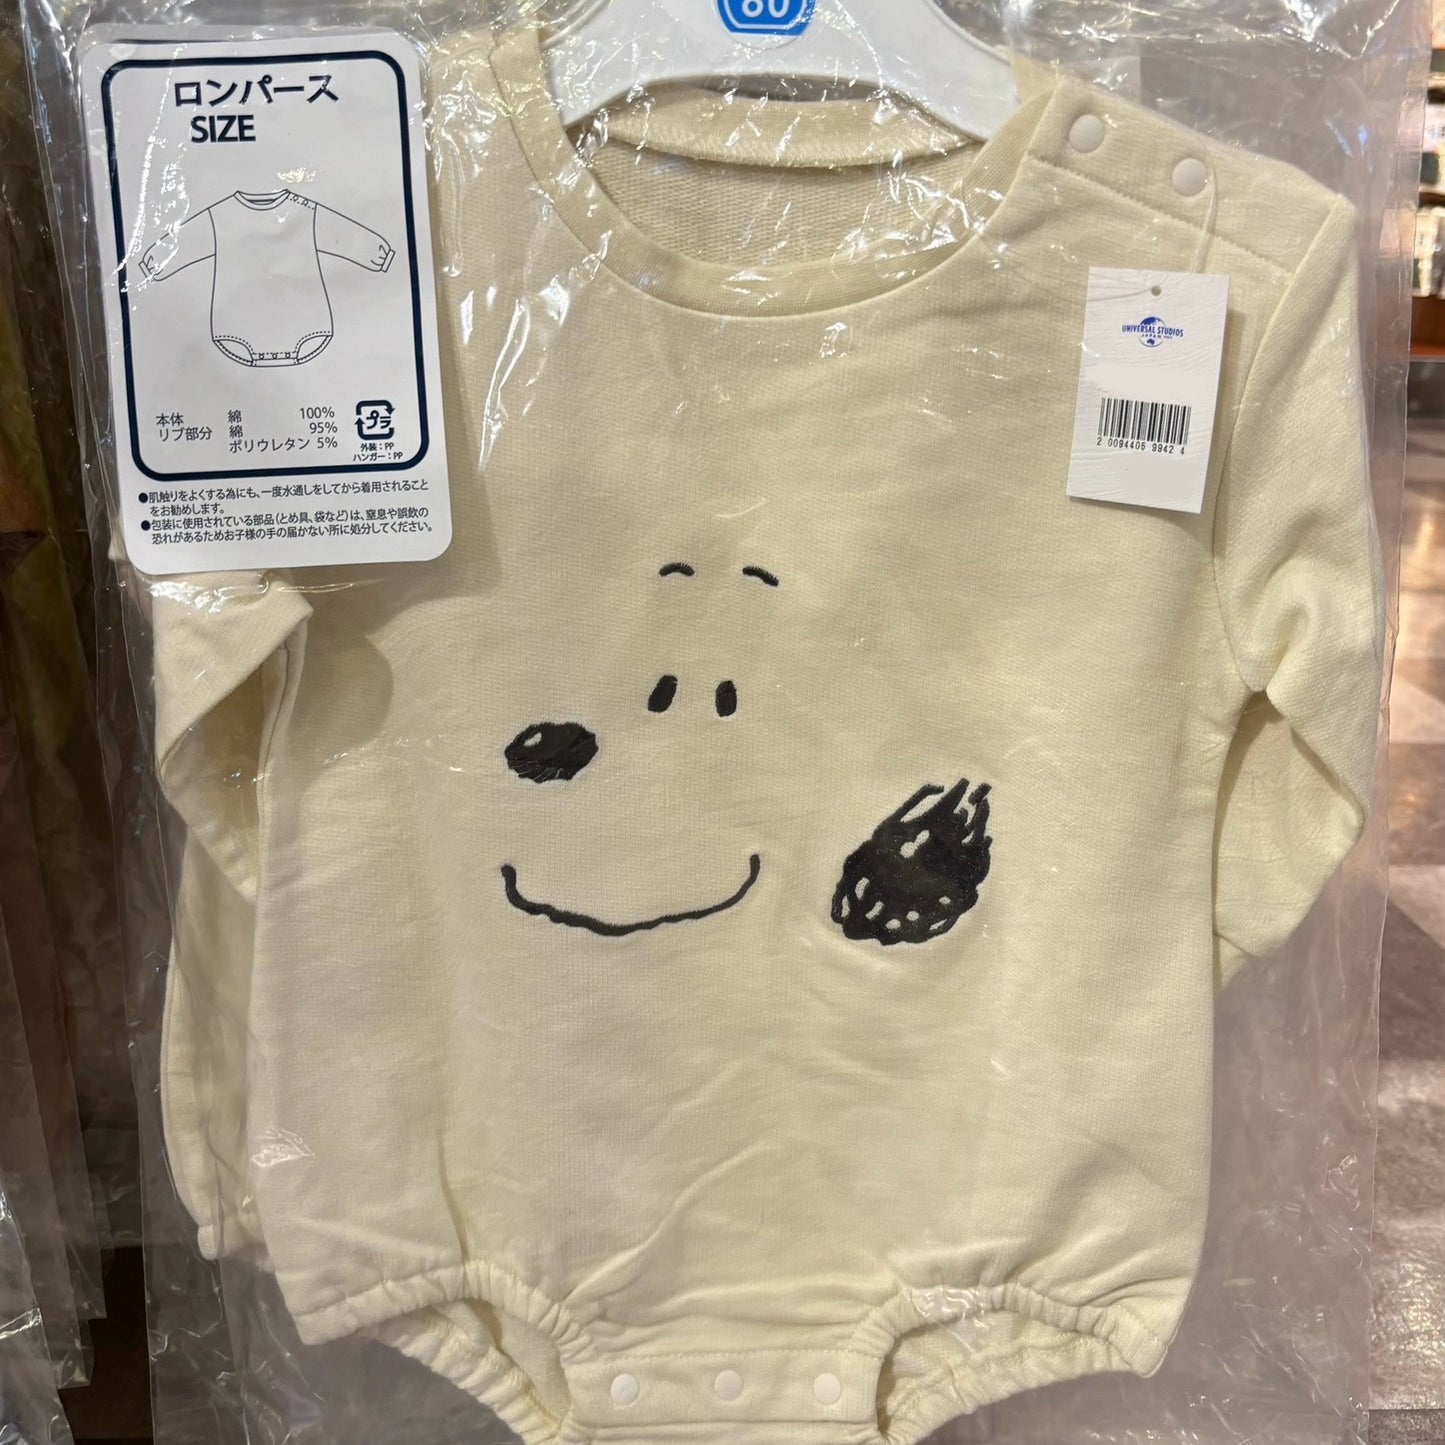 USJ Snoopy 嬰兒服裝 